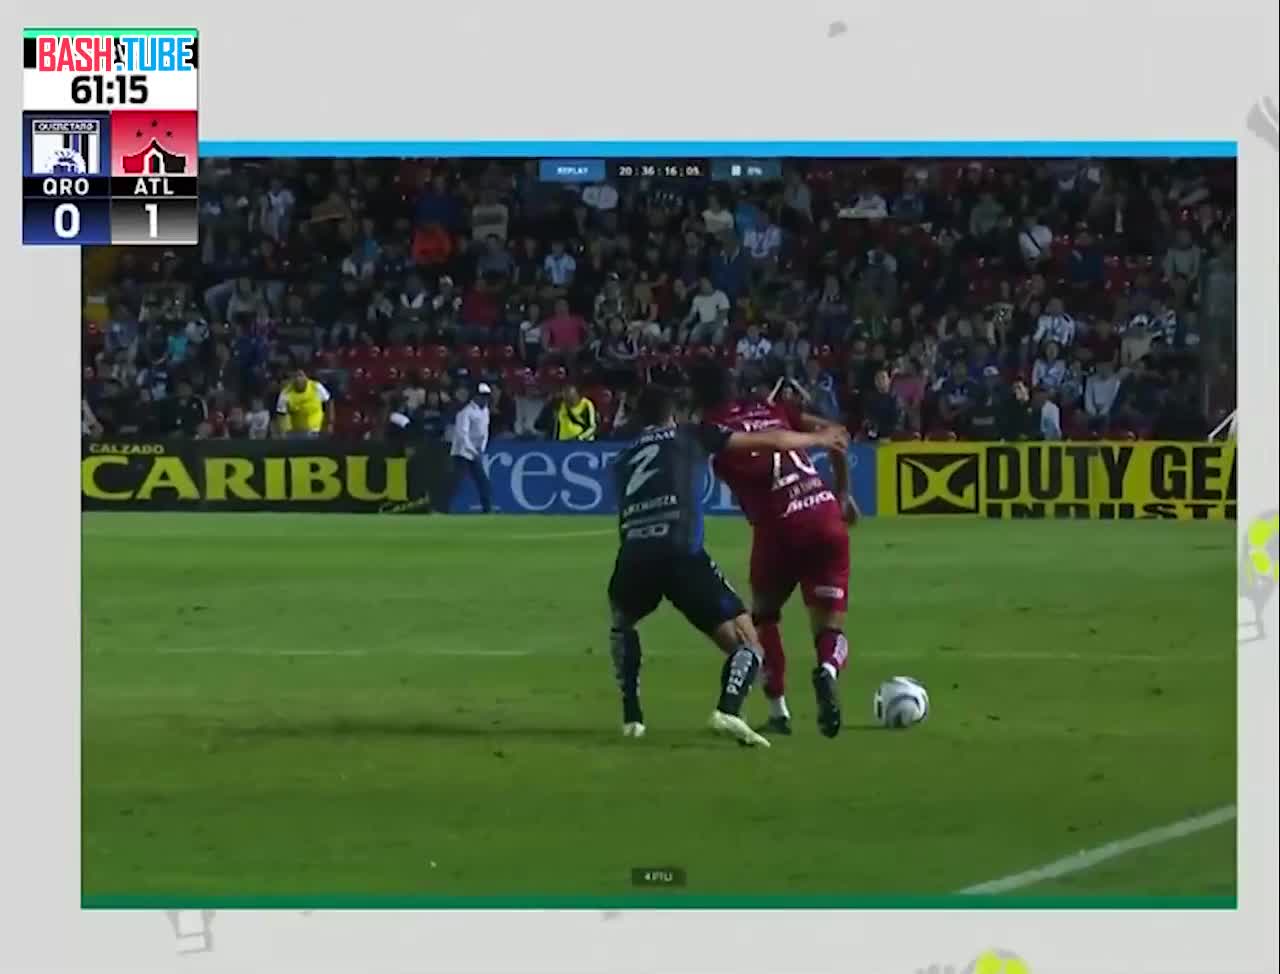  Мексиканский футболист Омар Мендоза сделал своеобразный «подкат» сзади и получил красную карточку